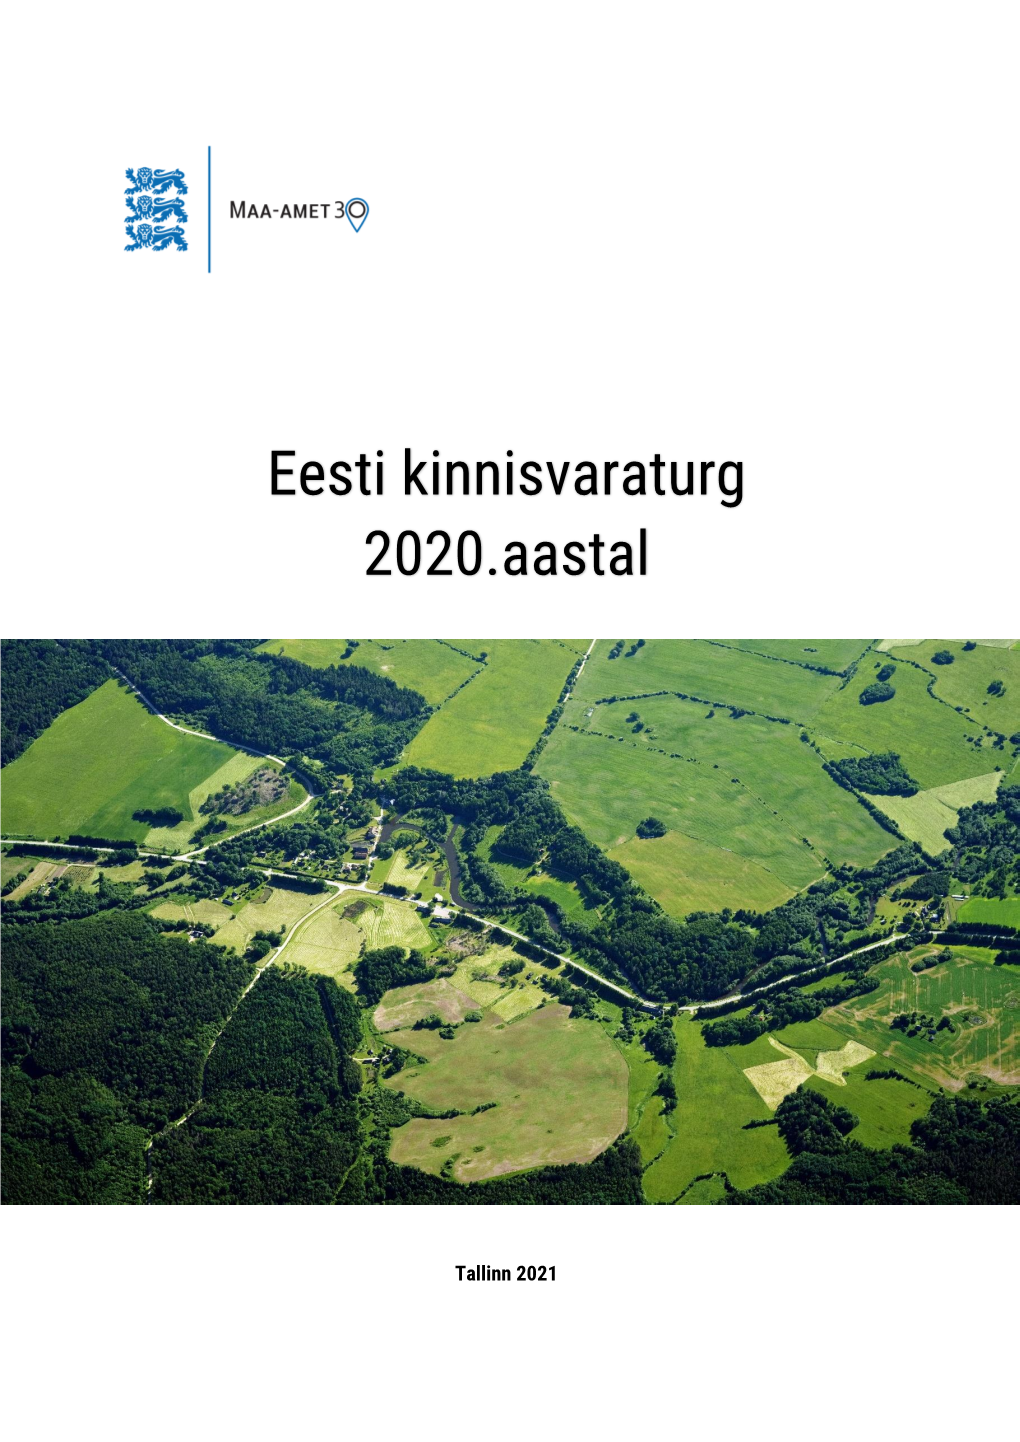 Eesti Kinnisvaraturg 2020.Aastal